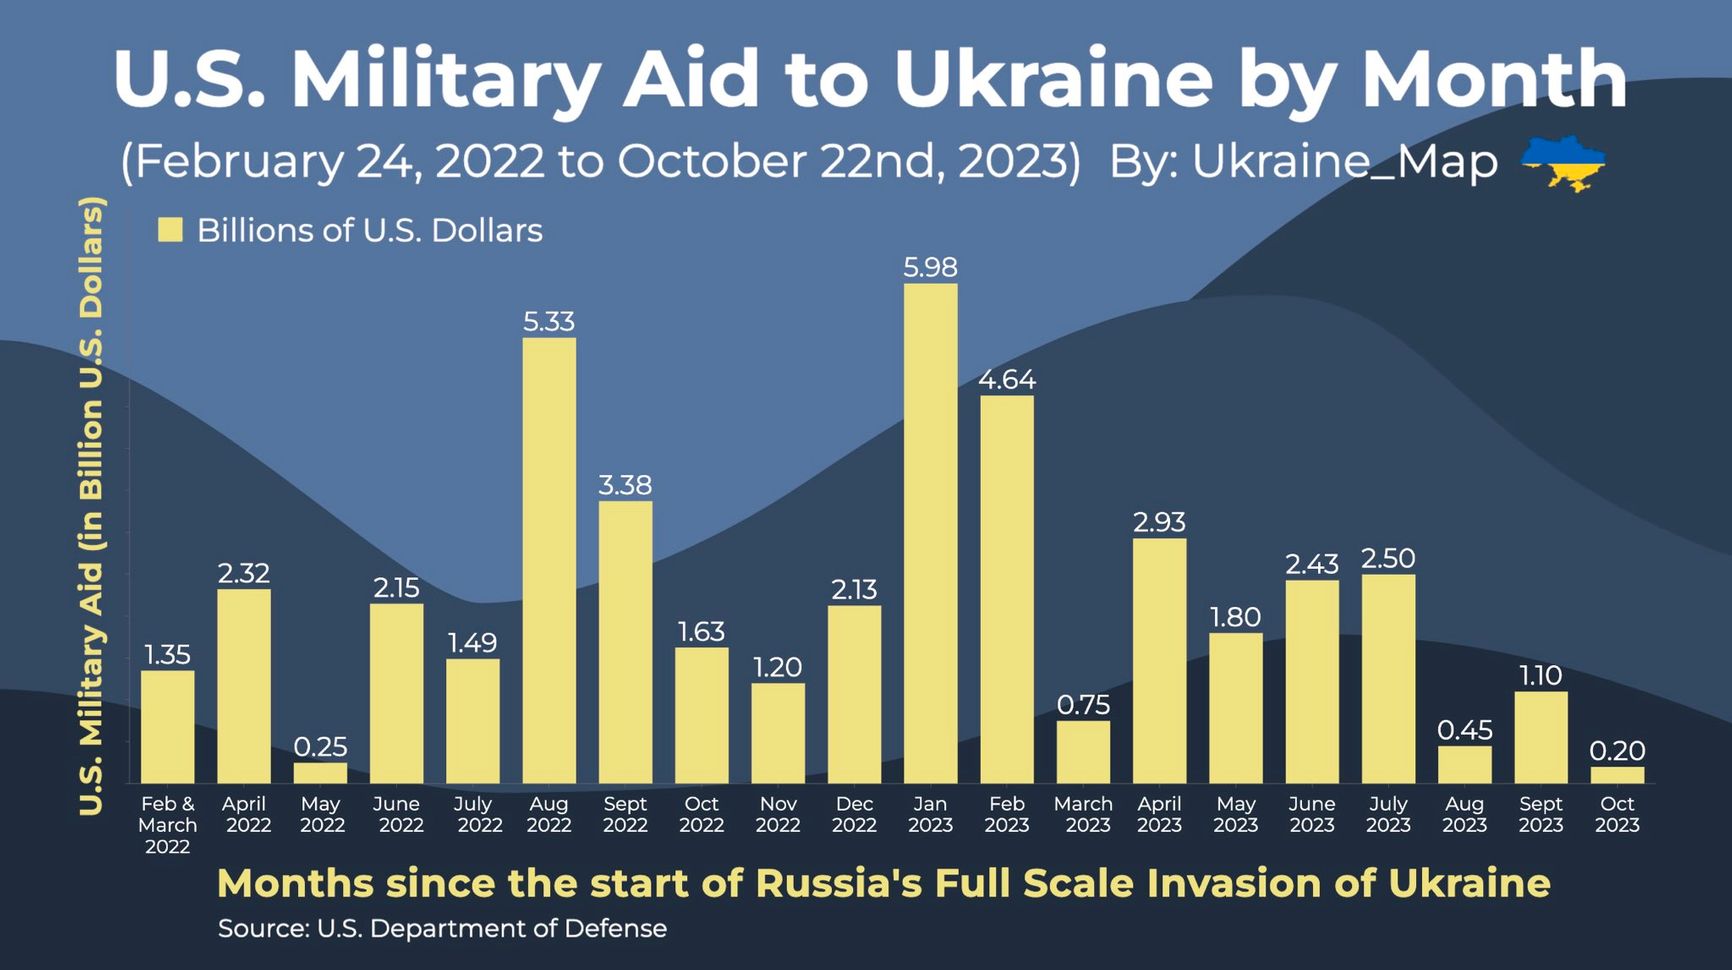 Американская военная помощь Украине в разбивке по месяцам с февраля 2022-го по октябрь 2023-го года